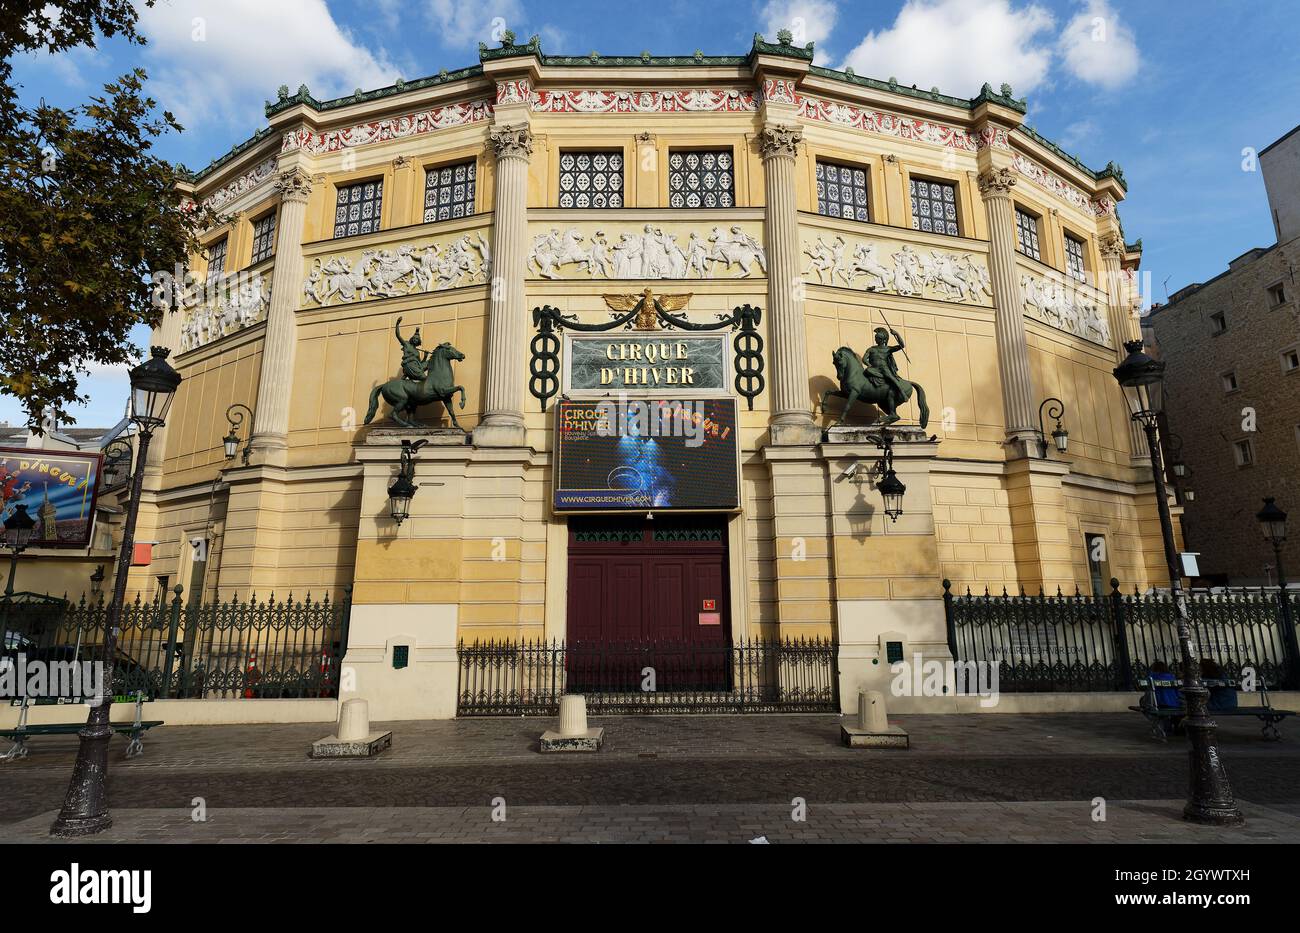 Blick auf den Cirque d'Hiver -Winter Circus. Das Theater wurde vom Architekten Jacques Ignace Hittorff entworfen und 1852 von Kaiser Napoleon III. Eröffnet Stockfoto